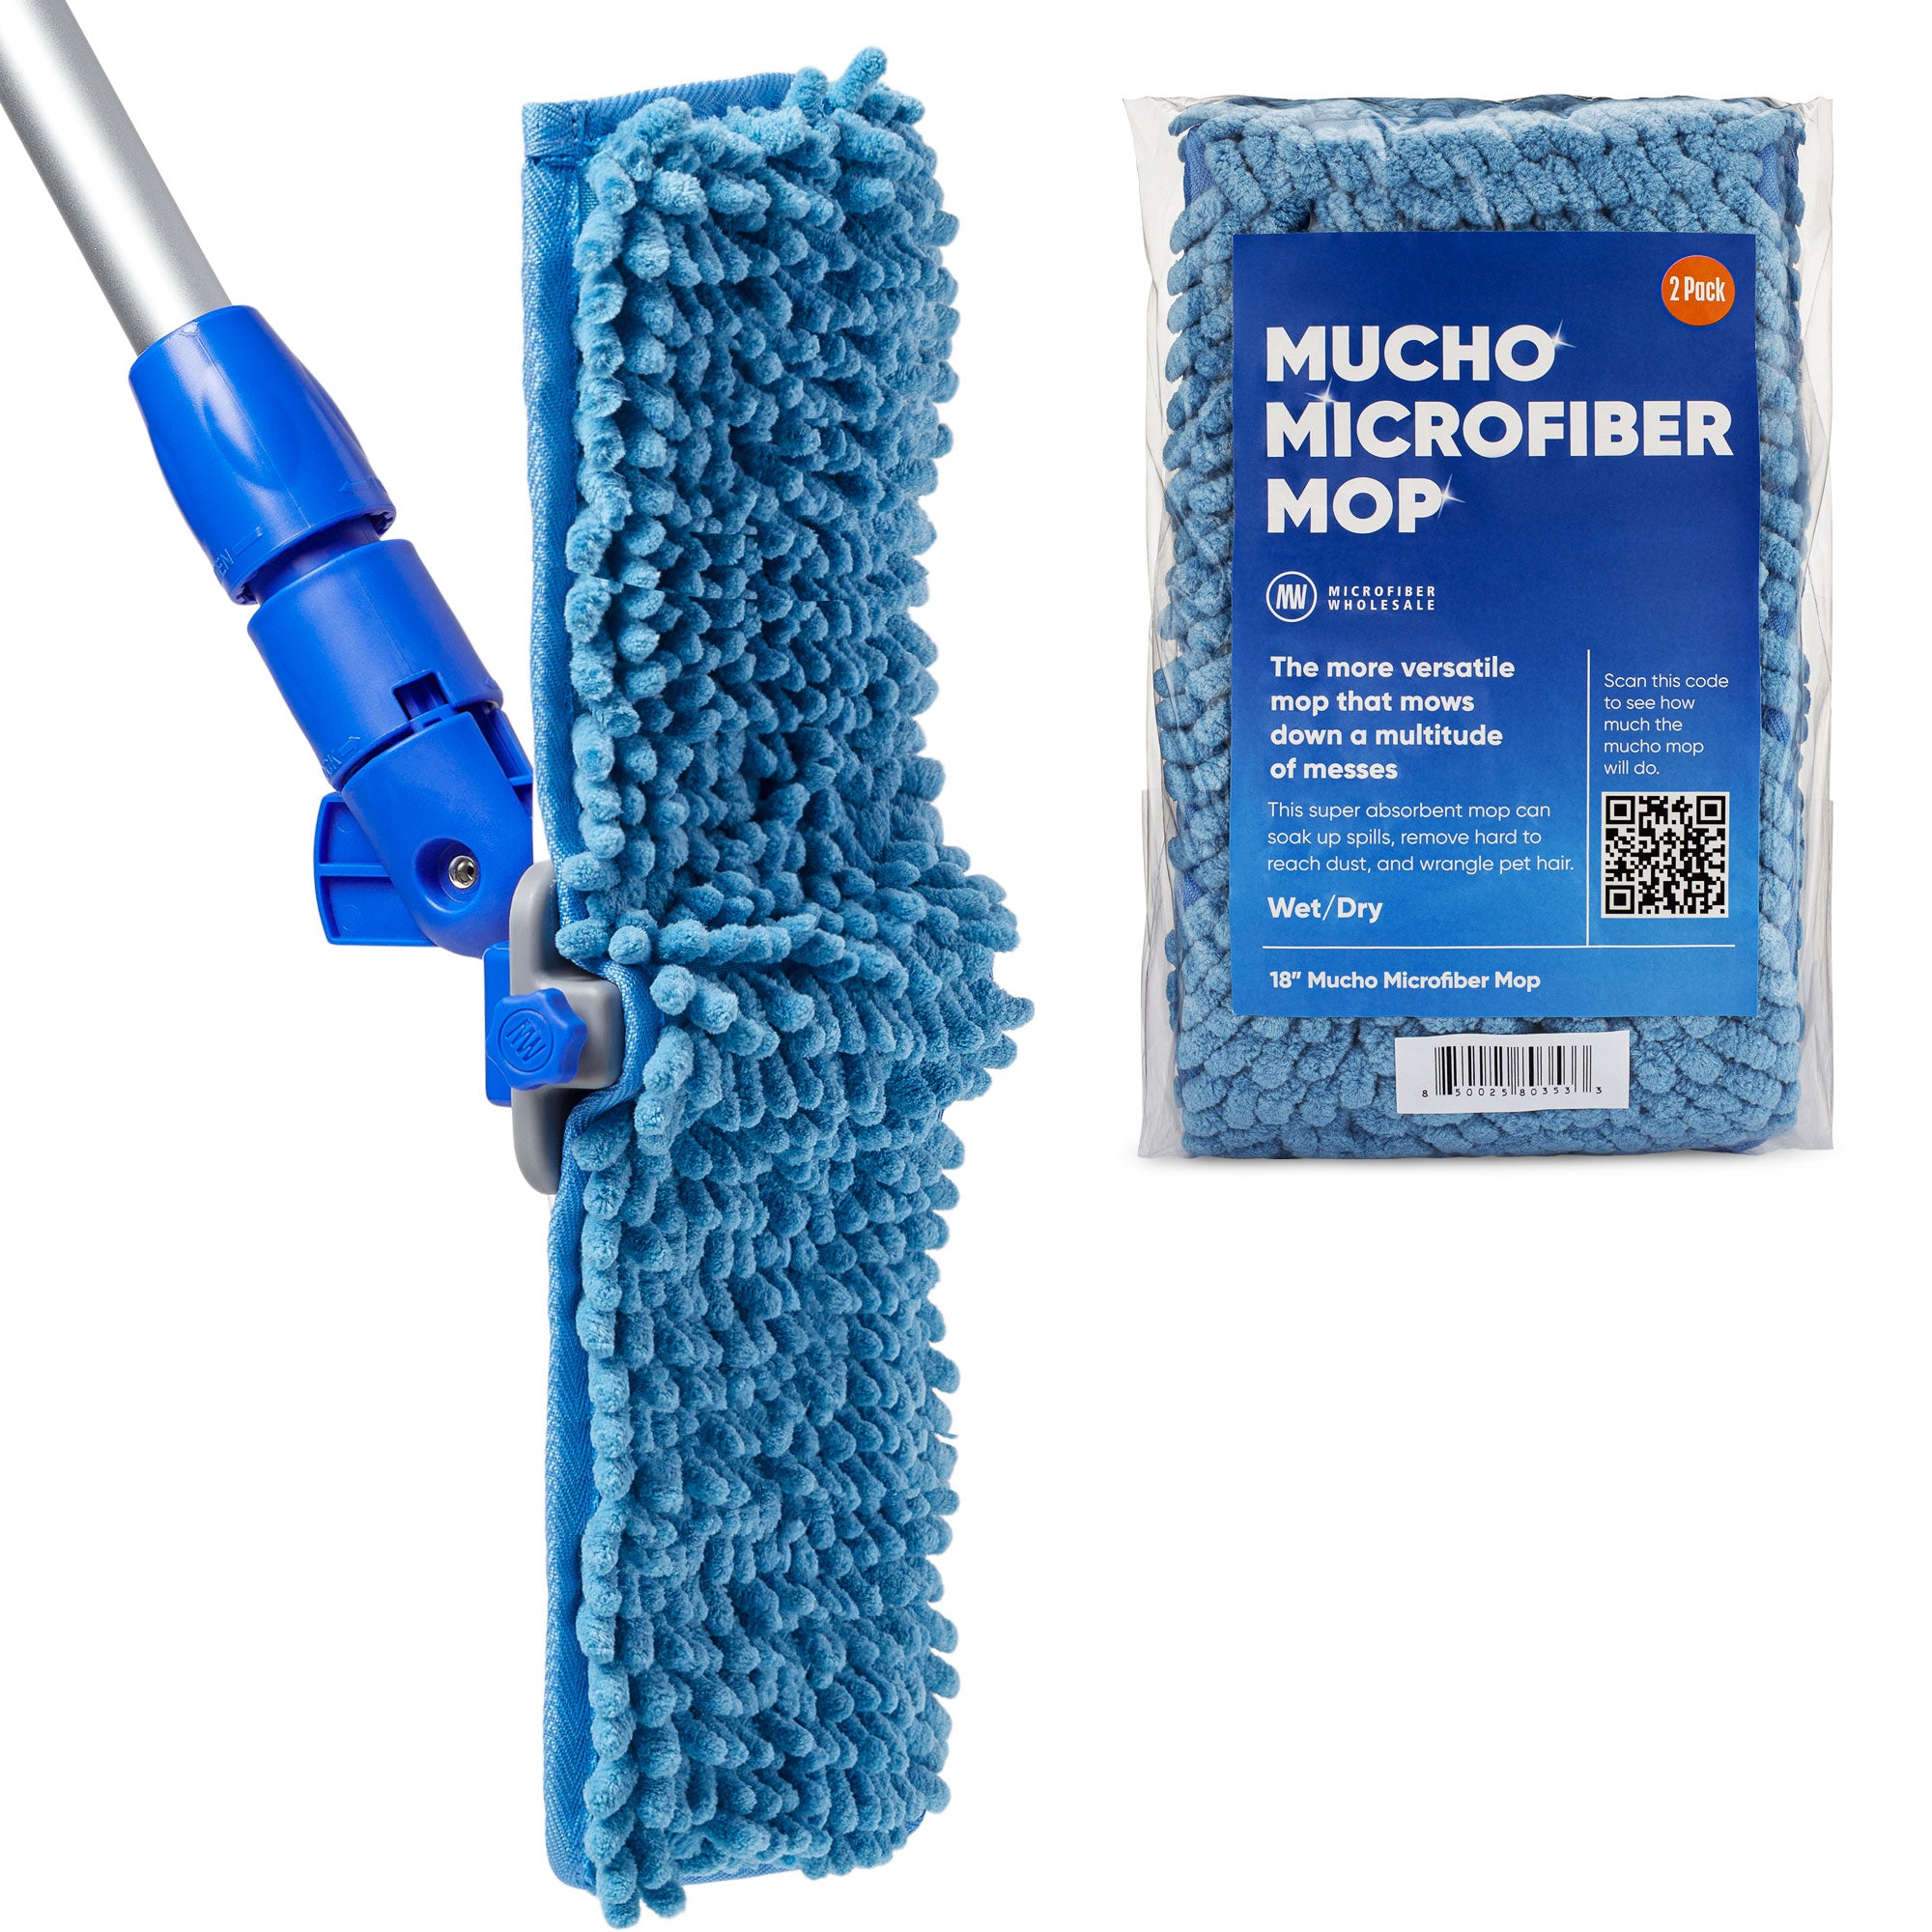 18" Mucho Mop Baseboard Pro Kit